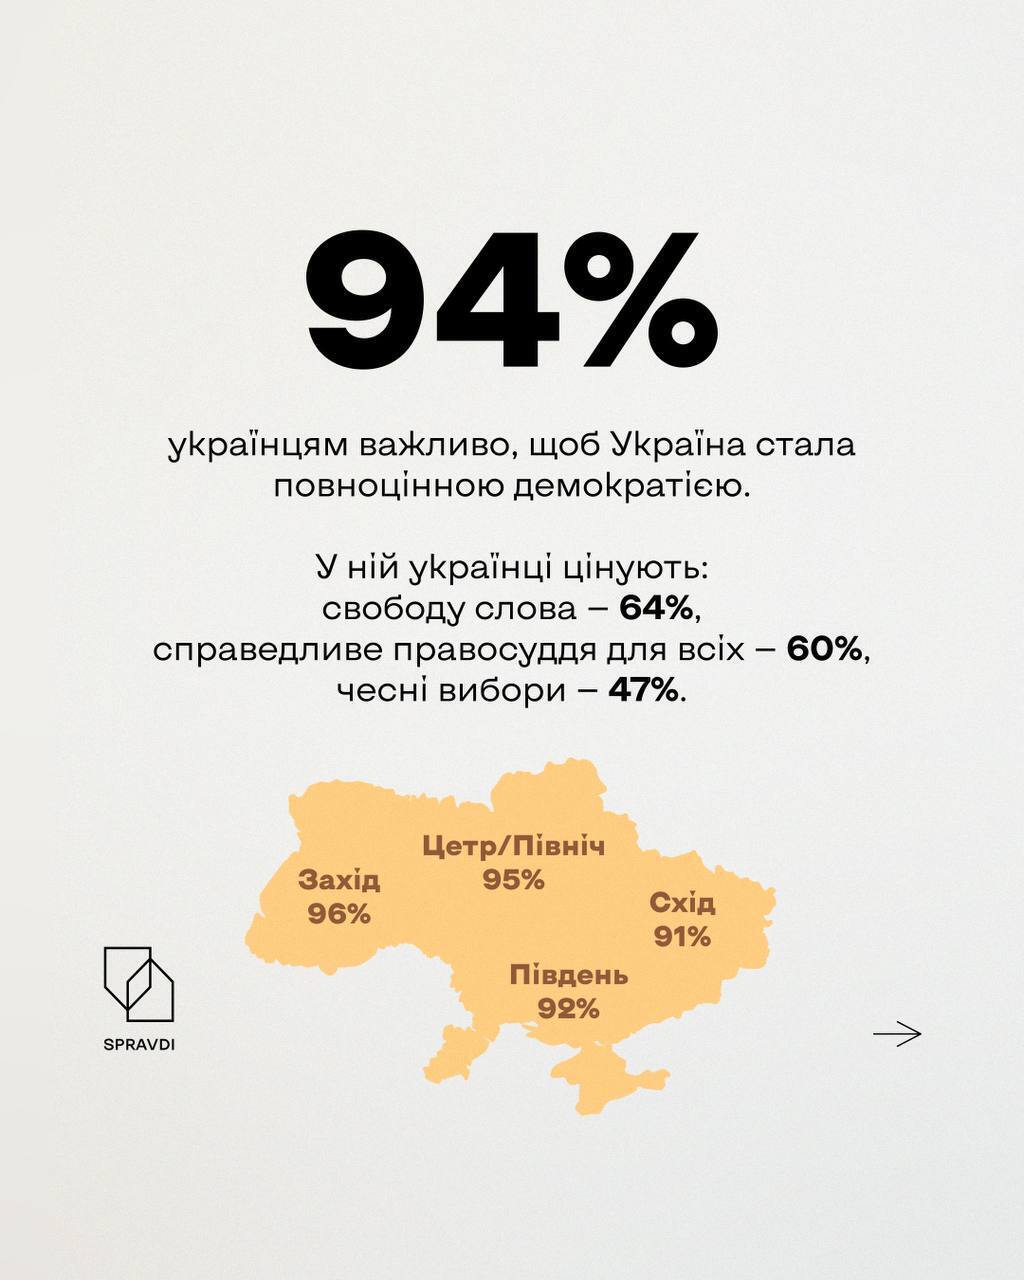 Для 94% українців важлива повноцінна демократія